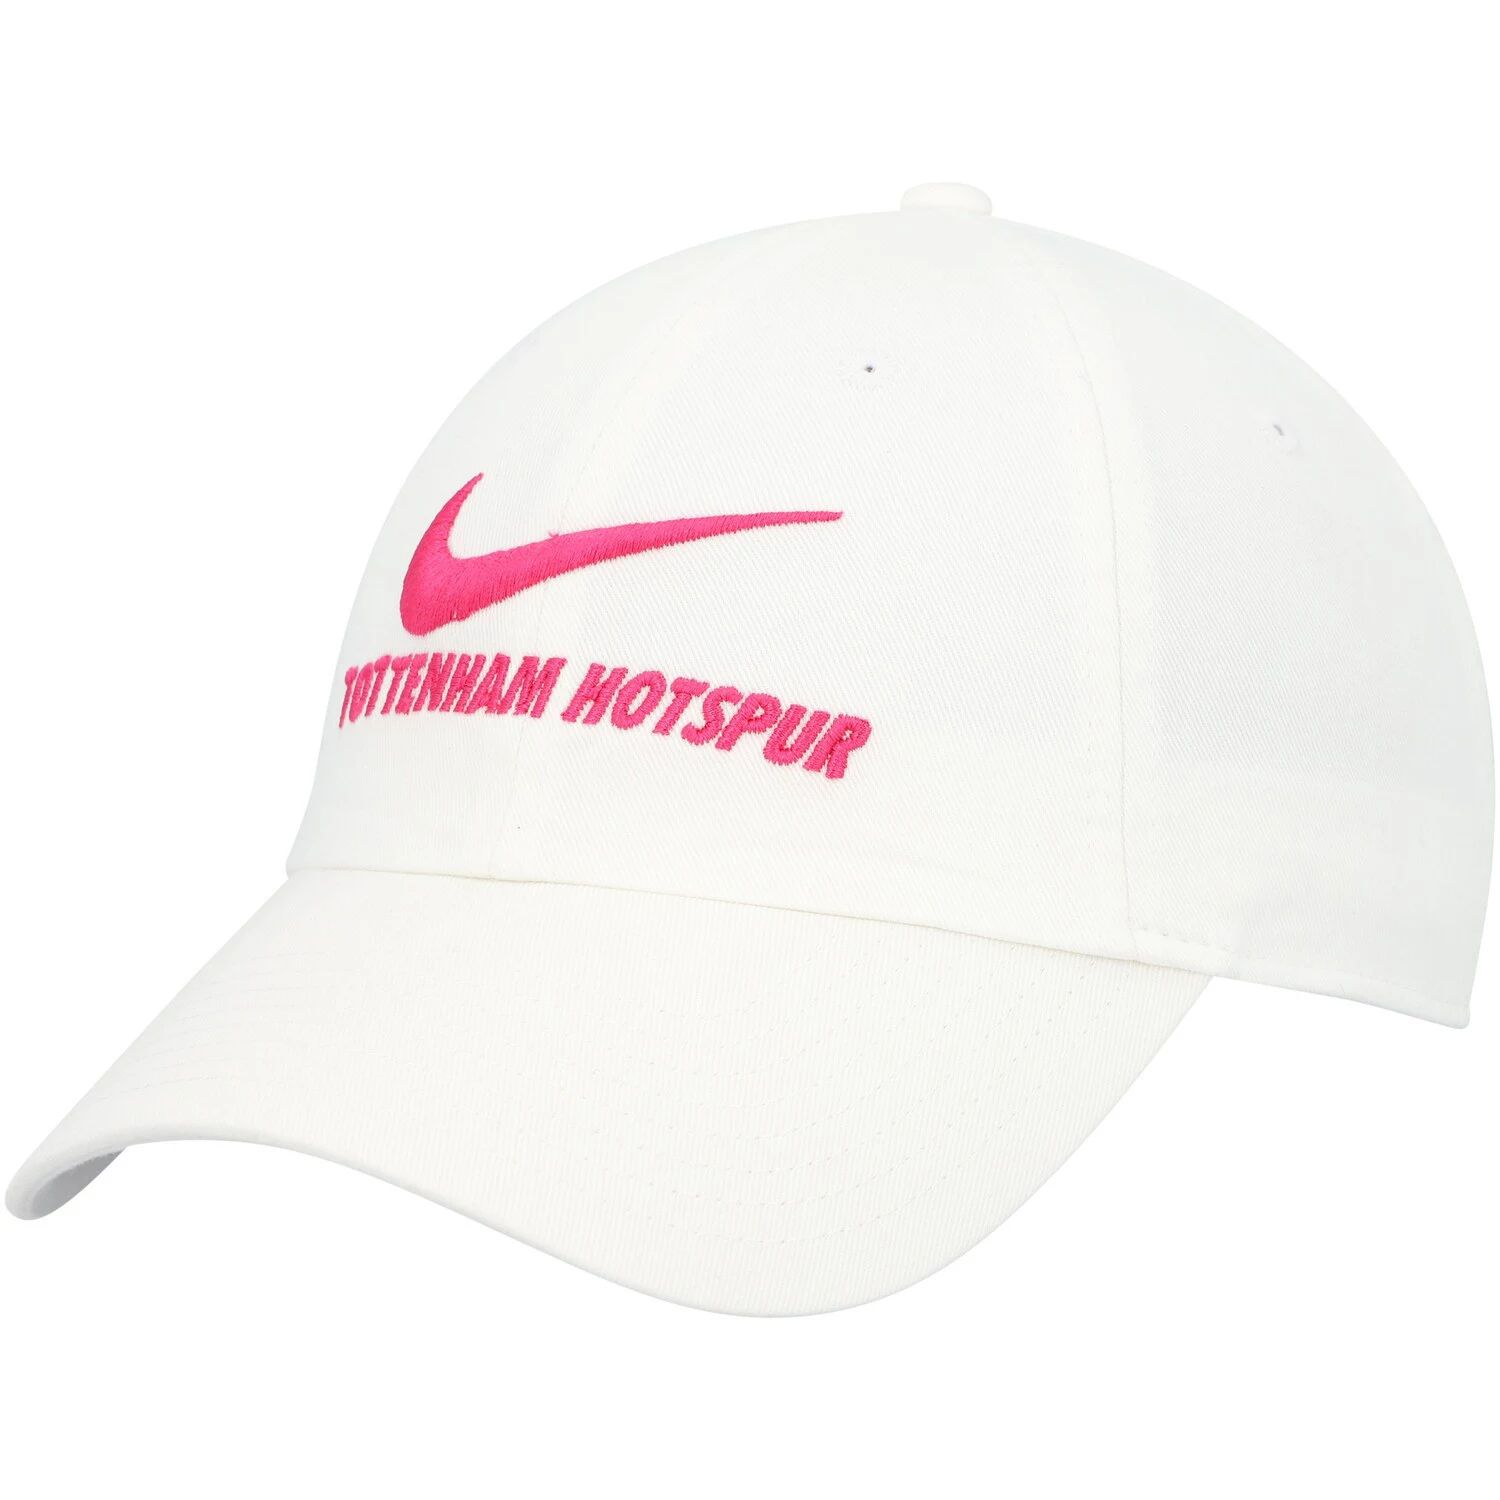 Женская регулируемая кепка Nike Tottenham Hotspur Campus белого цвета Nike кепка nike tottenham hotspur